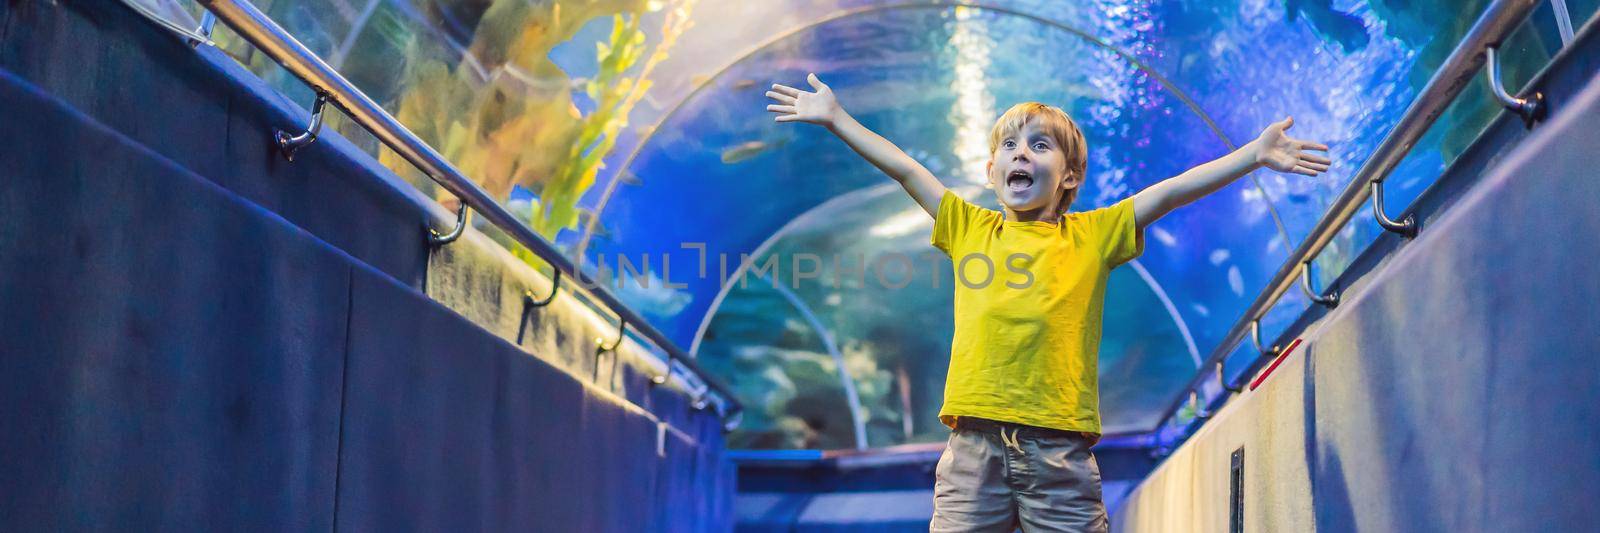 aquarium and boy, visit in oceanarium, underwater tunnel and kid, wildlife underwater indoor, nature aquatic, fish, tortoise. BANNER, LONG FORMAT